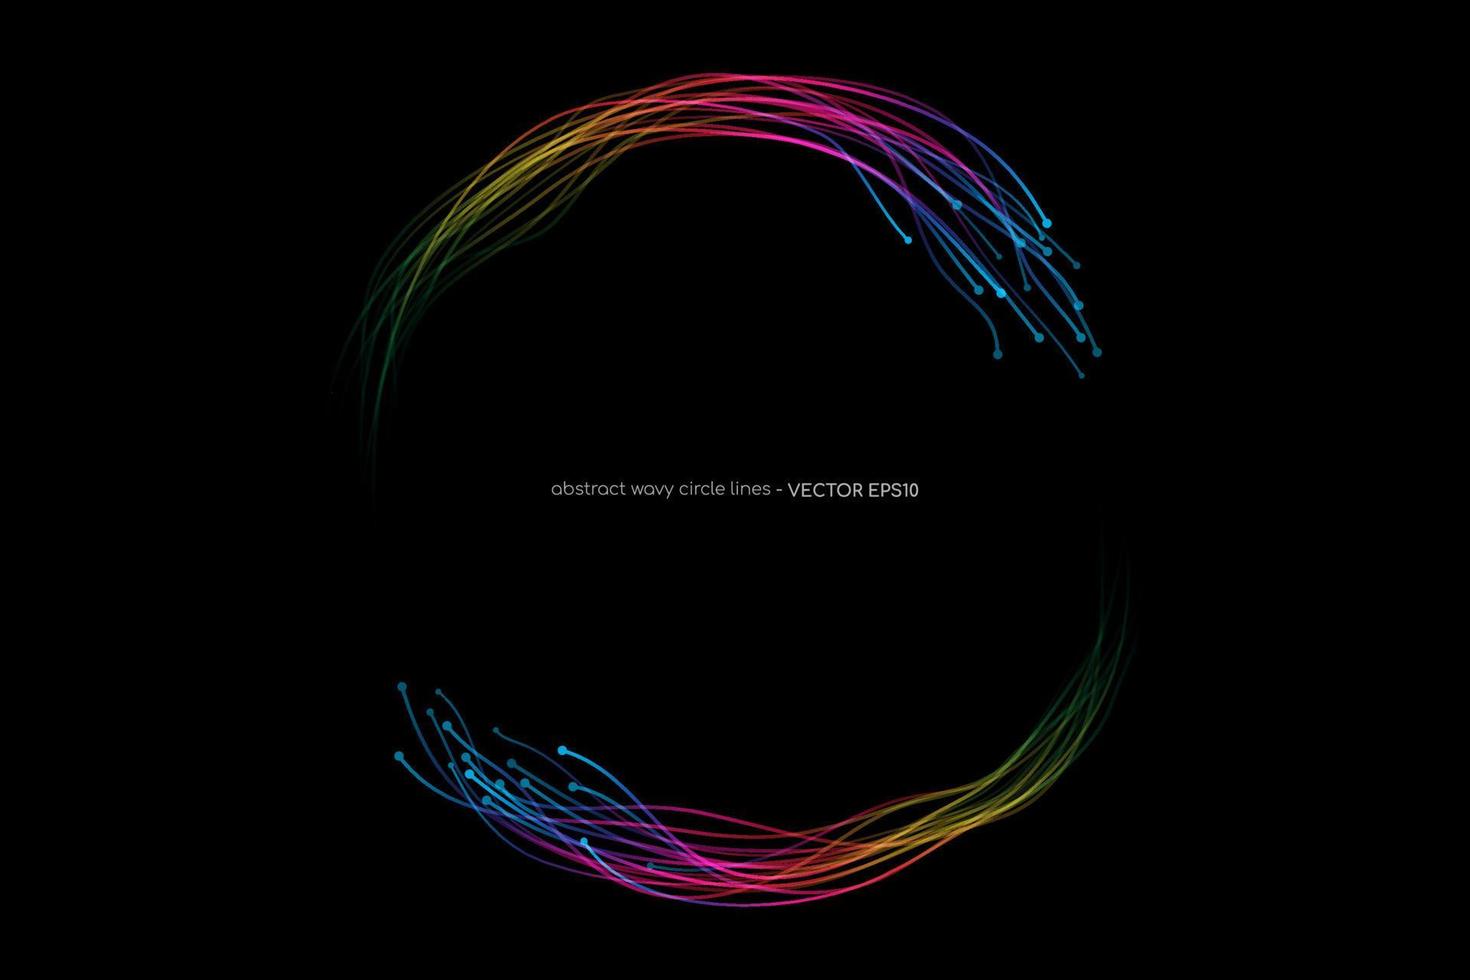 cercle de lignes lumineuses abstraites à spectre dynamique ondulé cercle tourbillonnant cadre rond isolé sur fond noir dans la technologie de concept, réseau de neurones, neurologie, science, musique vecteur